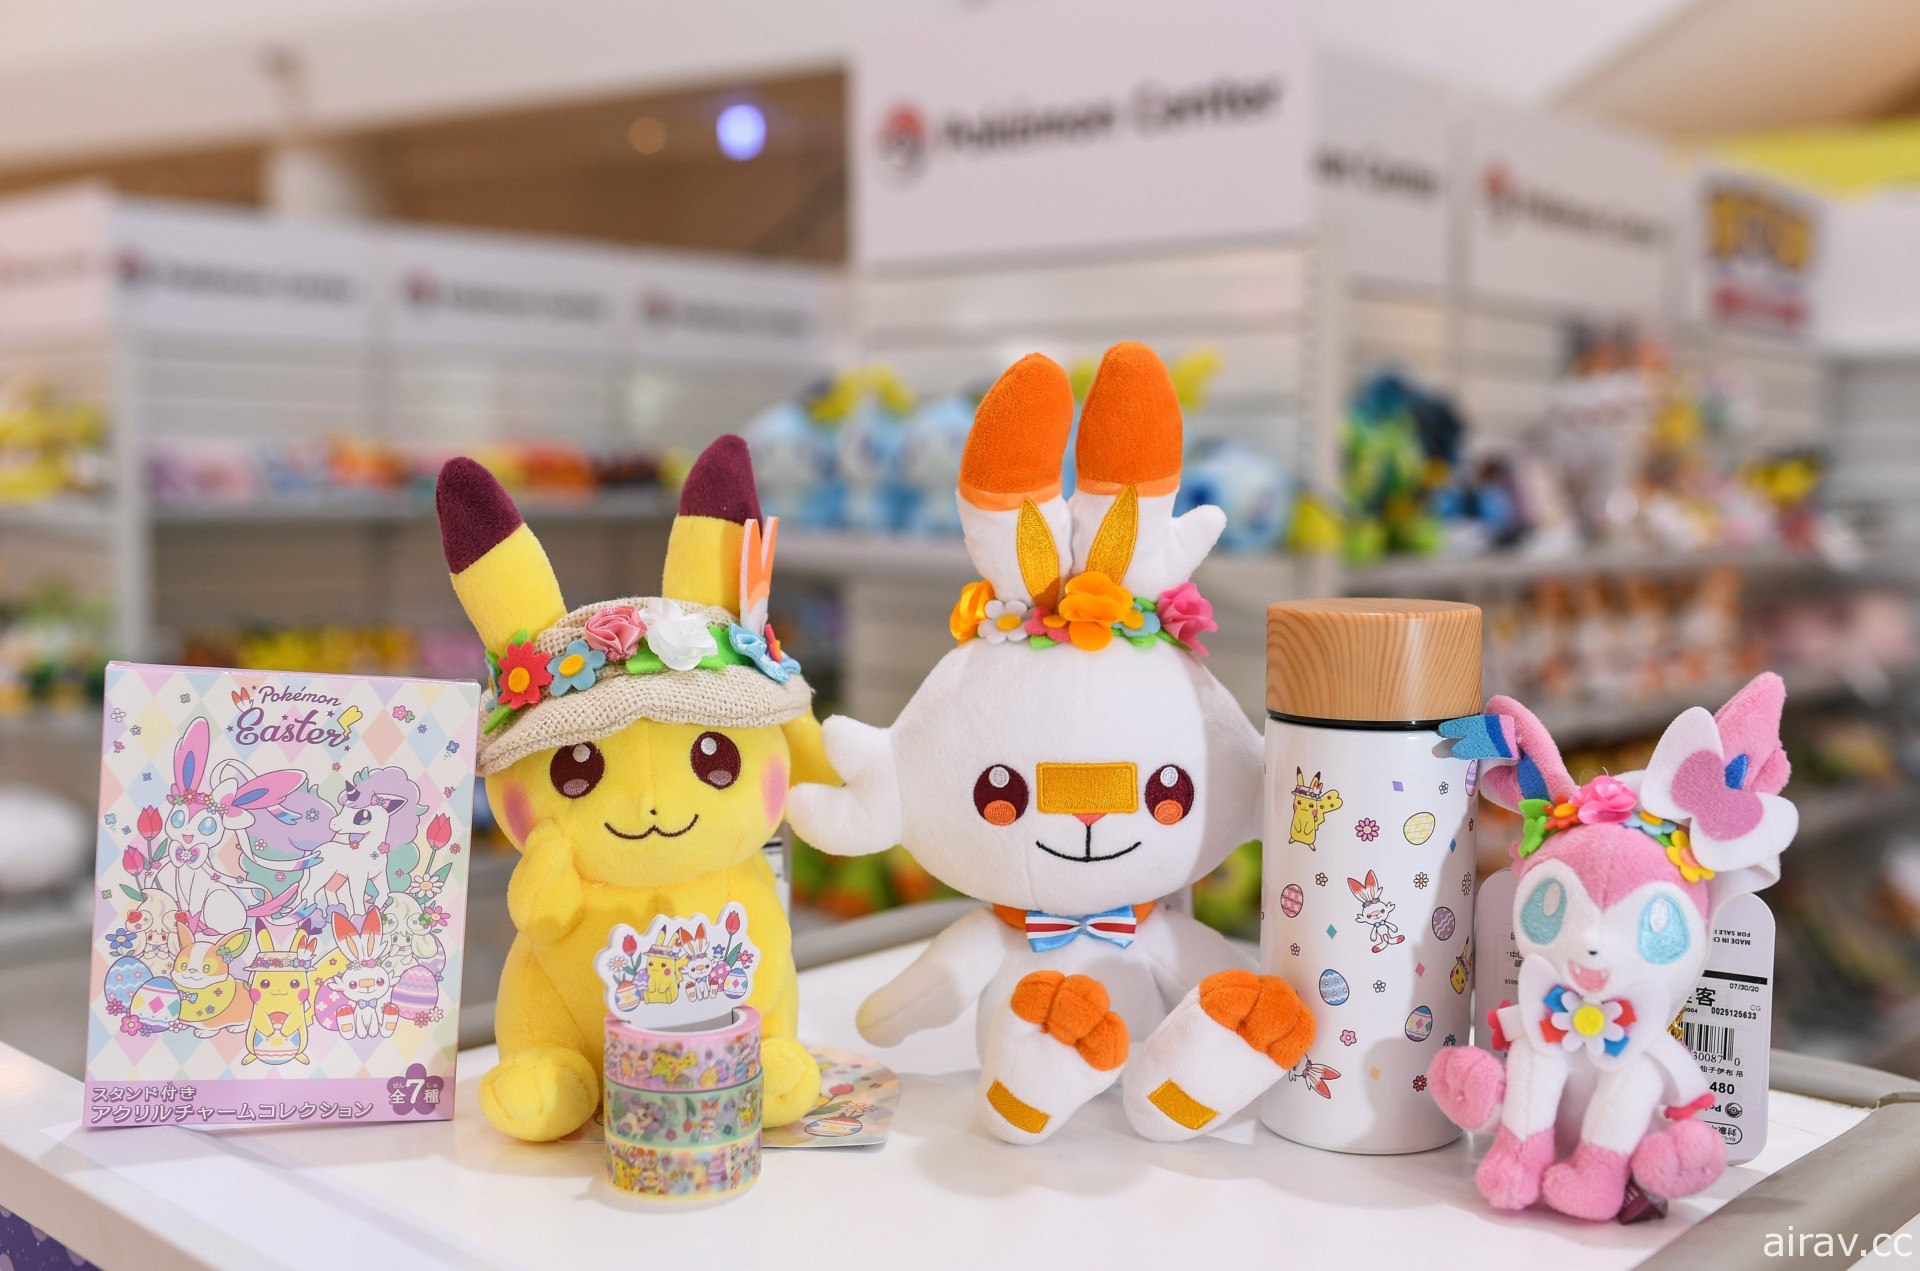 「寶可夢快閃店」即日起搶攻高雄、台中！日本 Pokémon Center 獨家販售商品曝光